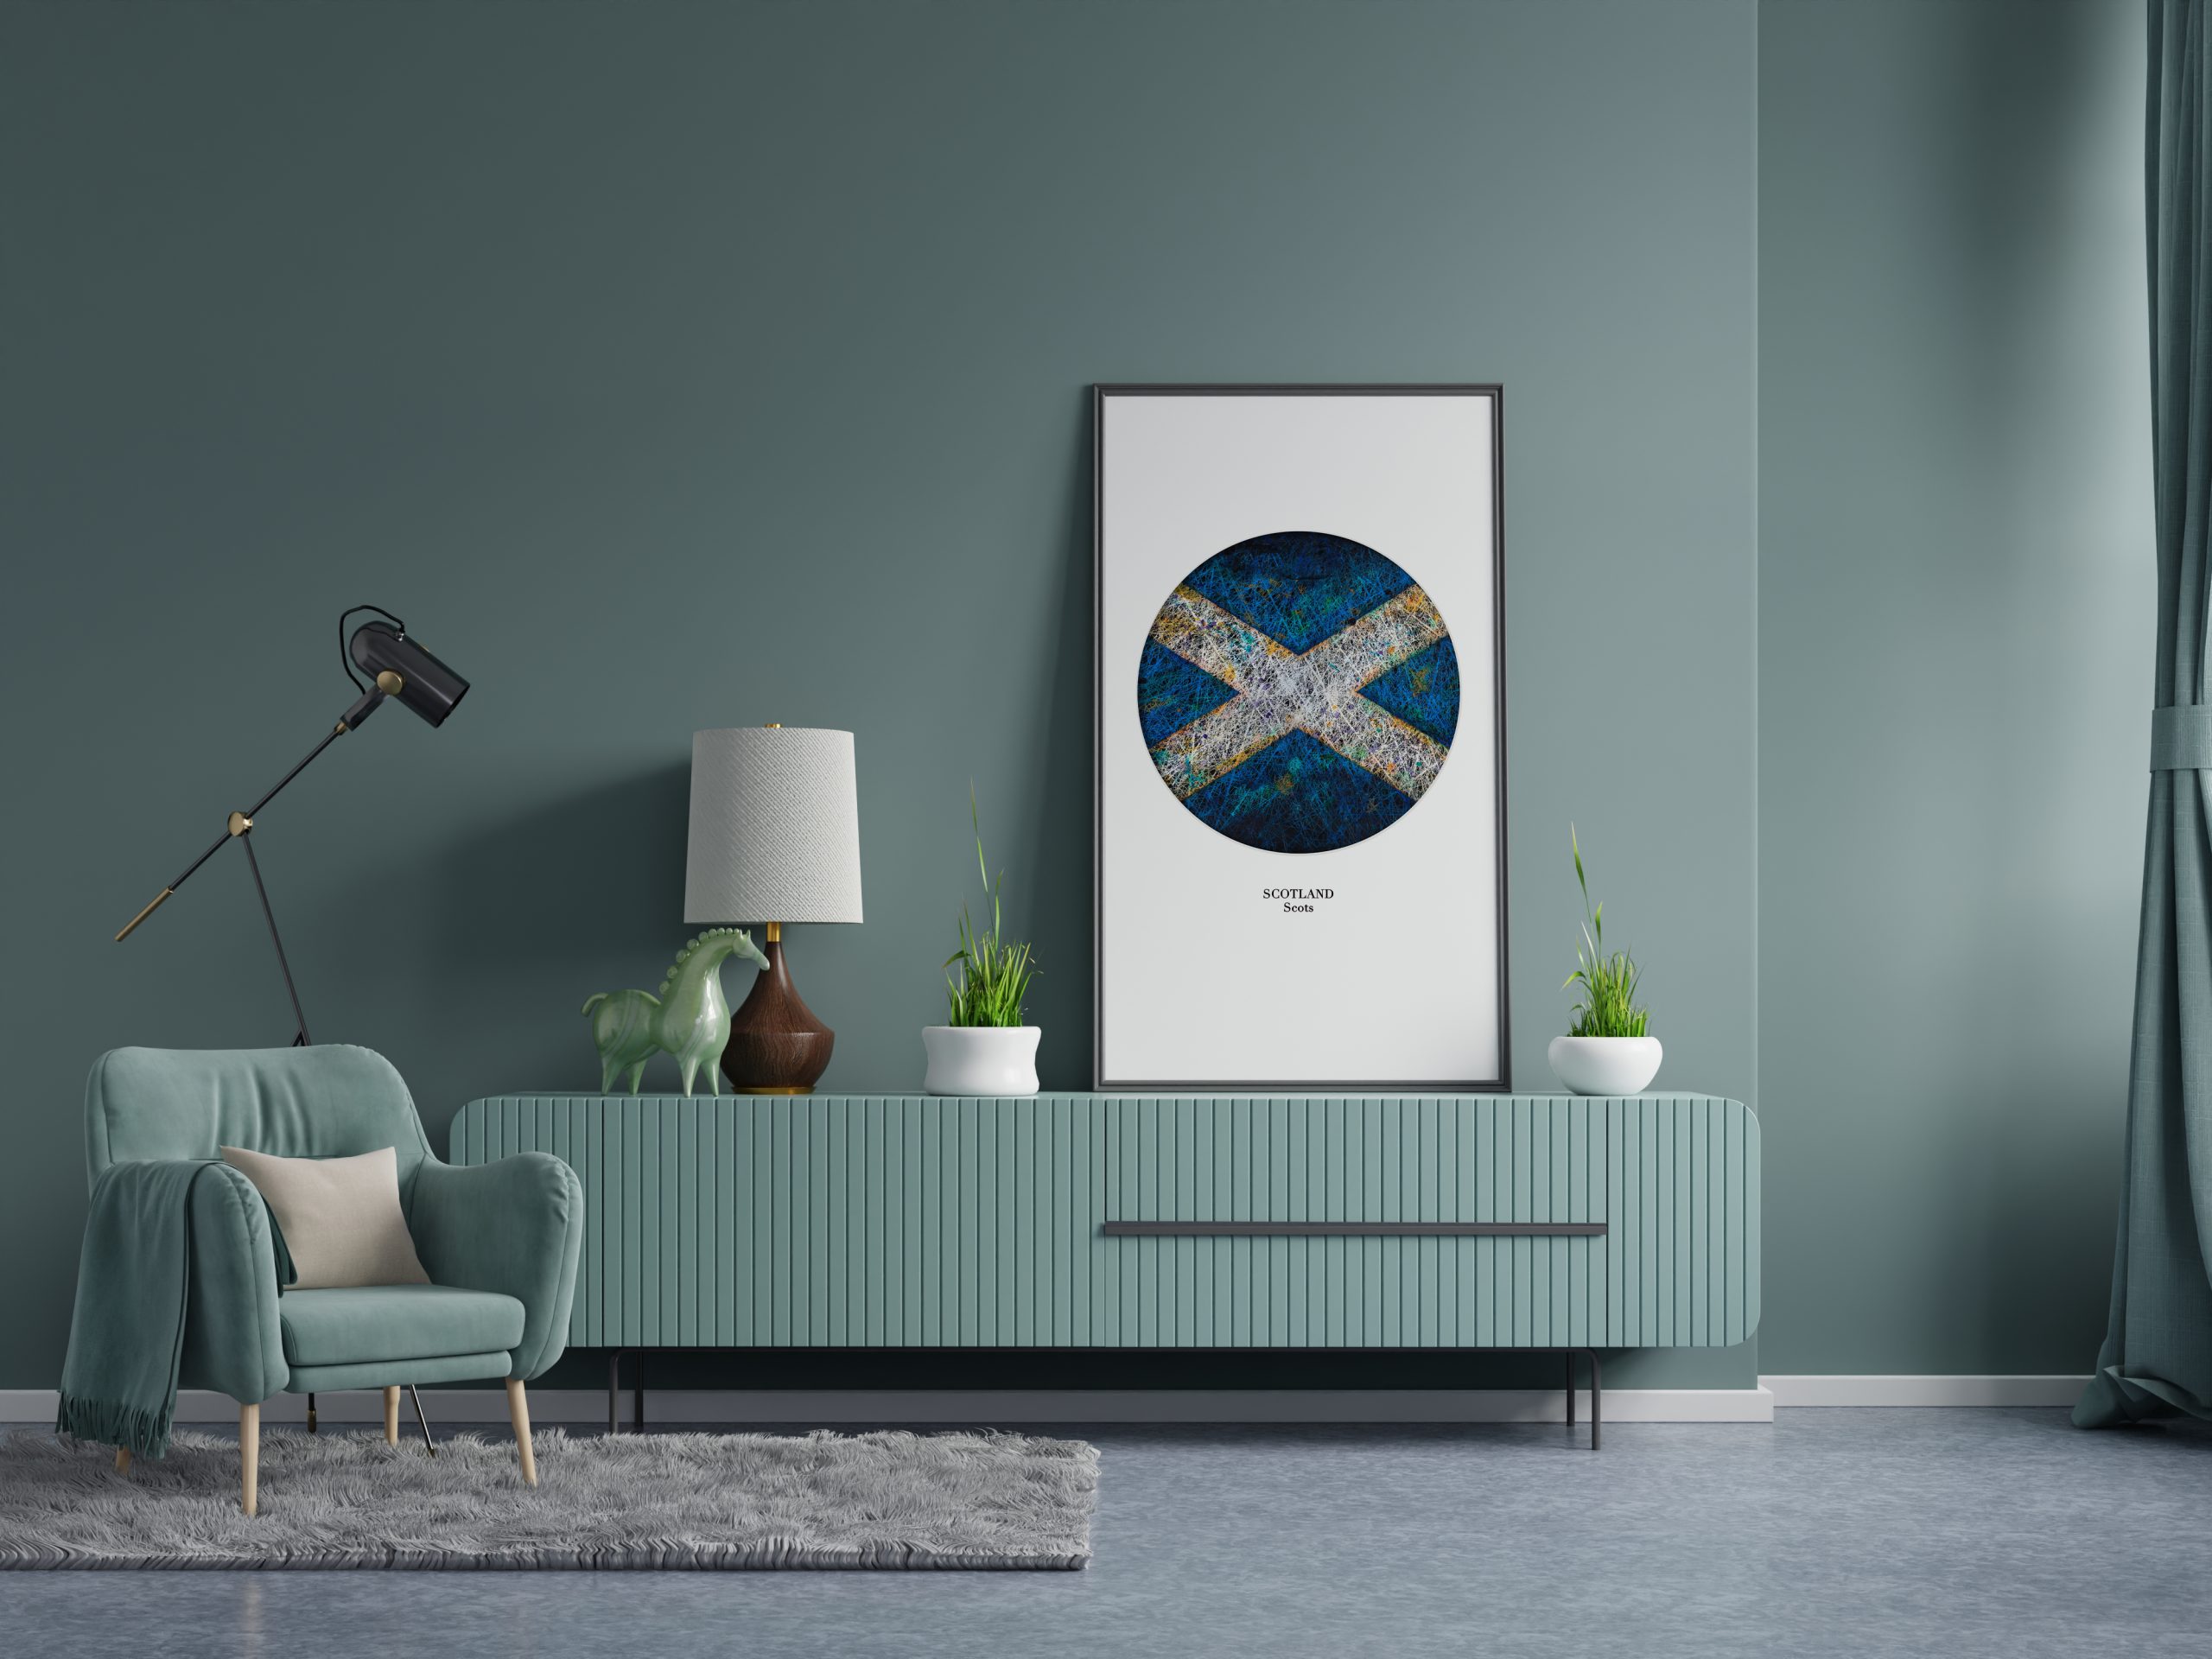 Framed Print of Scotland on dark green wall living room interior